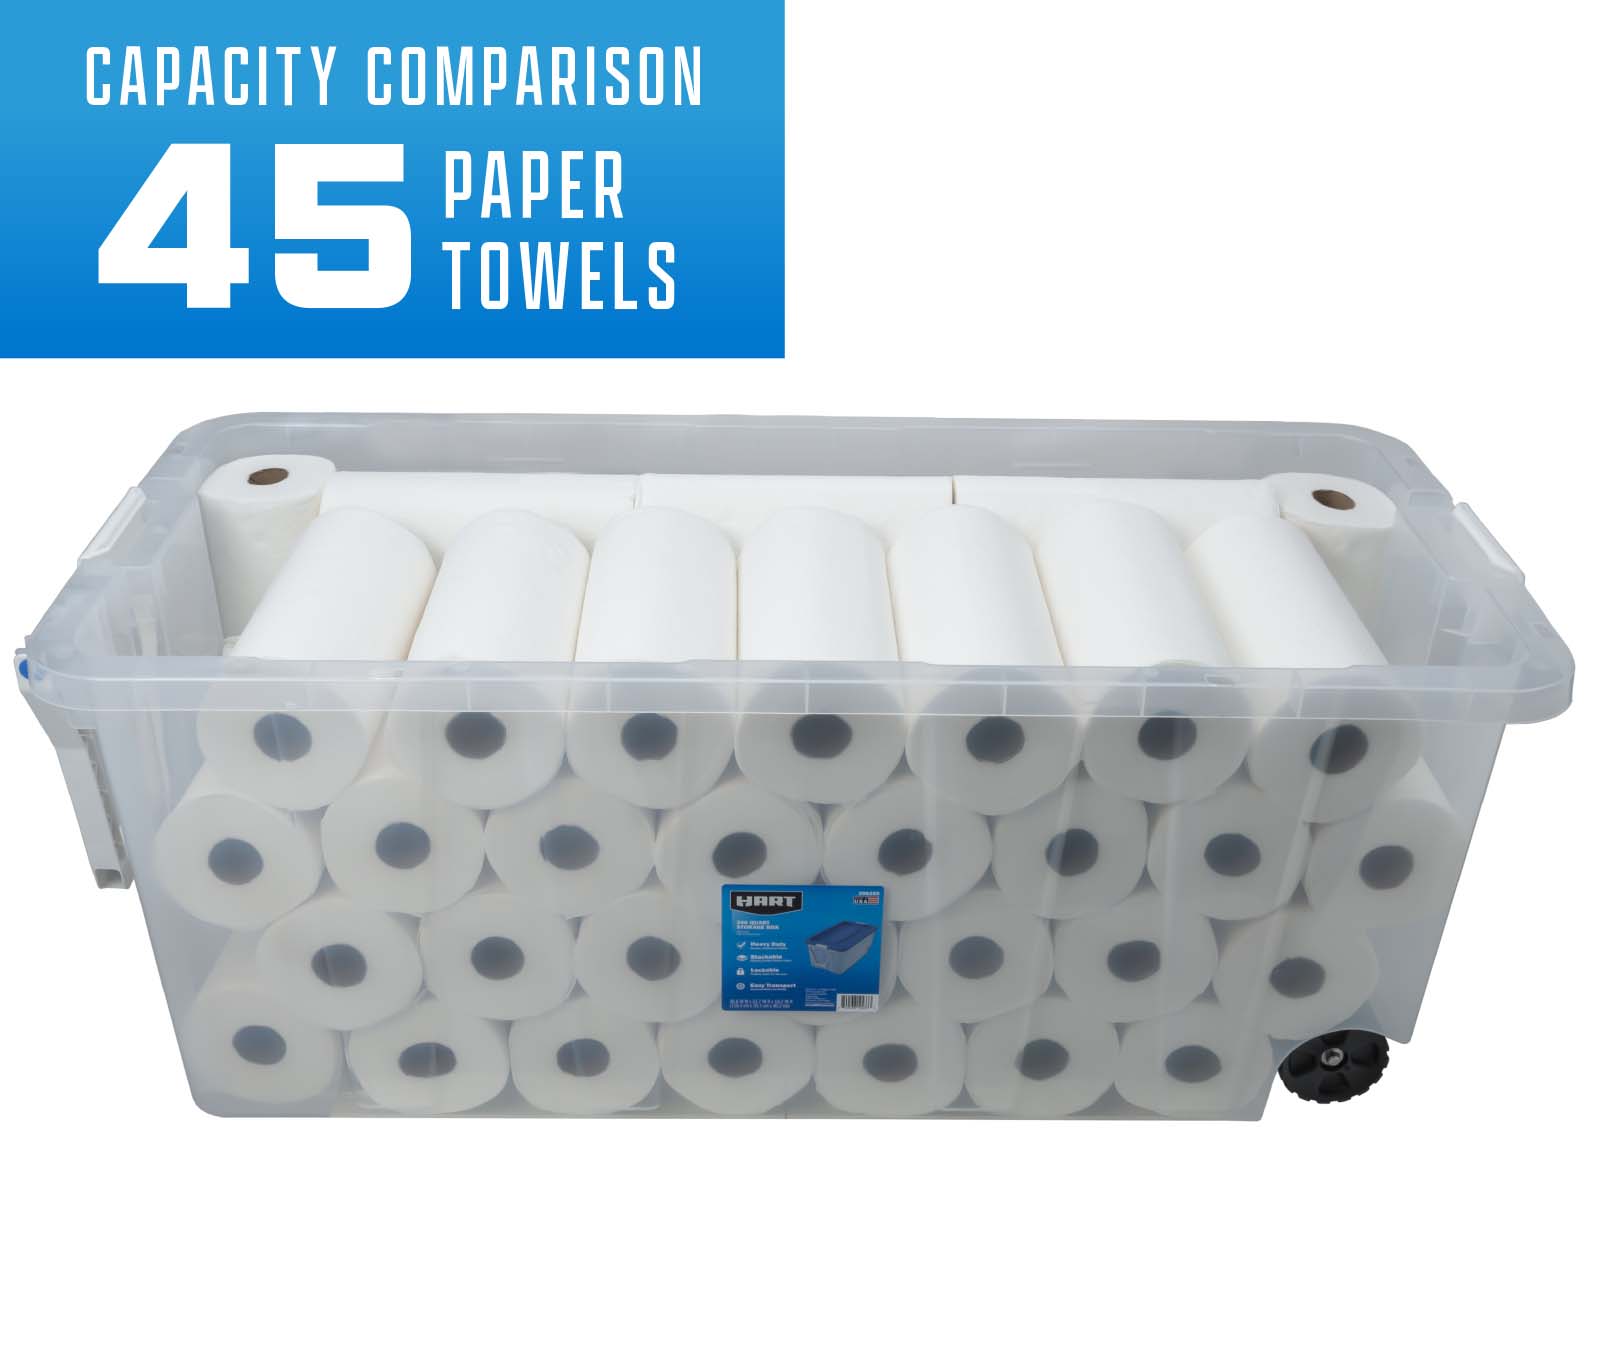 Capacity comparison 45 paper towels